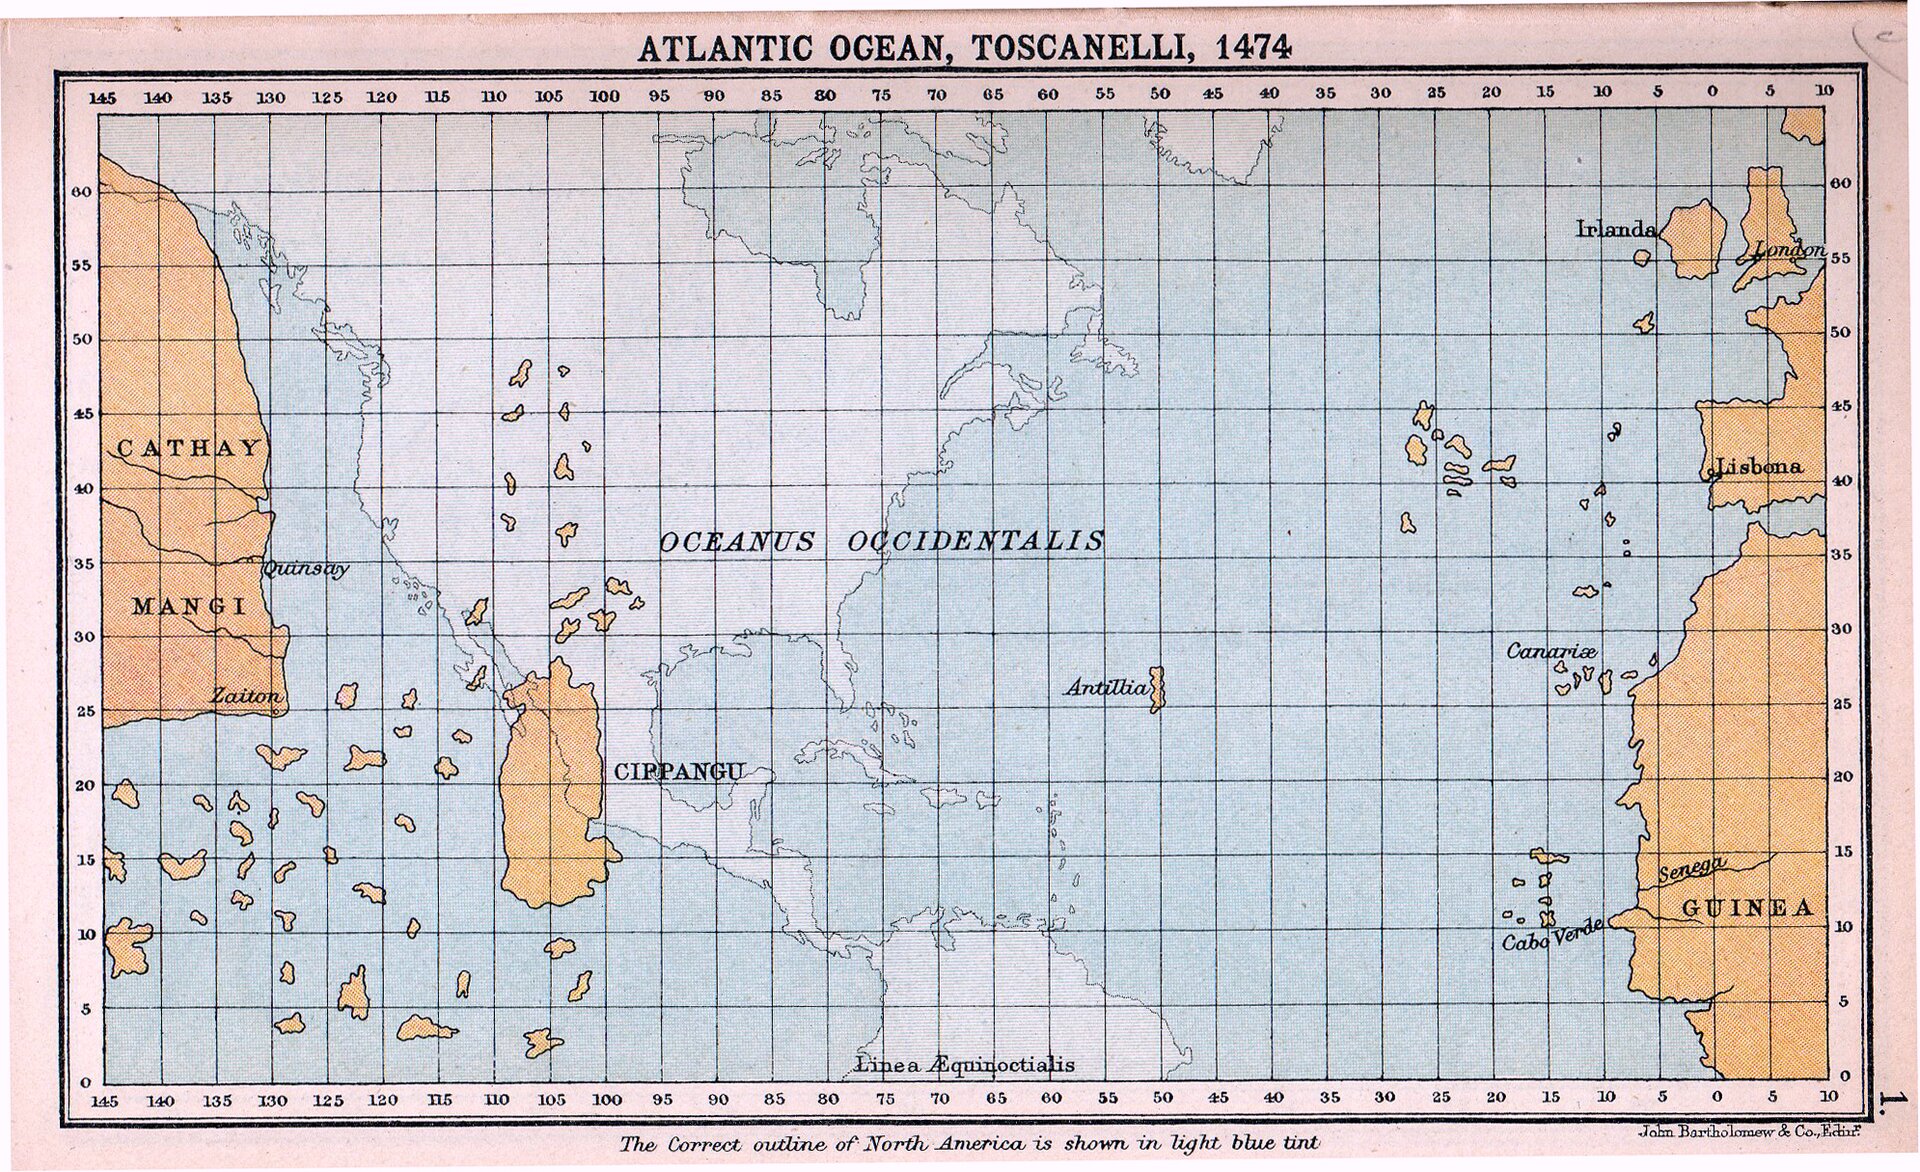 Grafika przedstawia starą mapę, gdzie na głównym planie jest ocean Atlantycki.  Po prawej stronie mapy kolorem brązowym zaznaczone są nazway: Irlanda, London, Lisbona, Canarise, Guinea. Natomiast po lewej stronie mapy kolorem brązowym zaznaczono: Cathay, Mangi oraz Cippangu. Na środku mapy znajduje się zamalowany kolorem białym kontynent Ameryki Południowej i Ameryki Północnej.